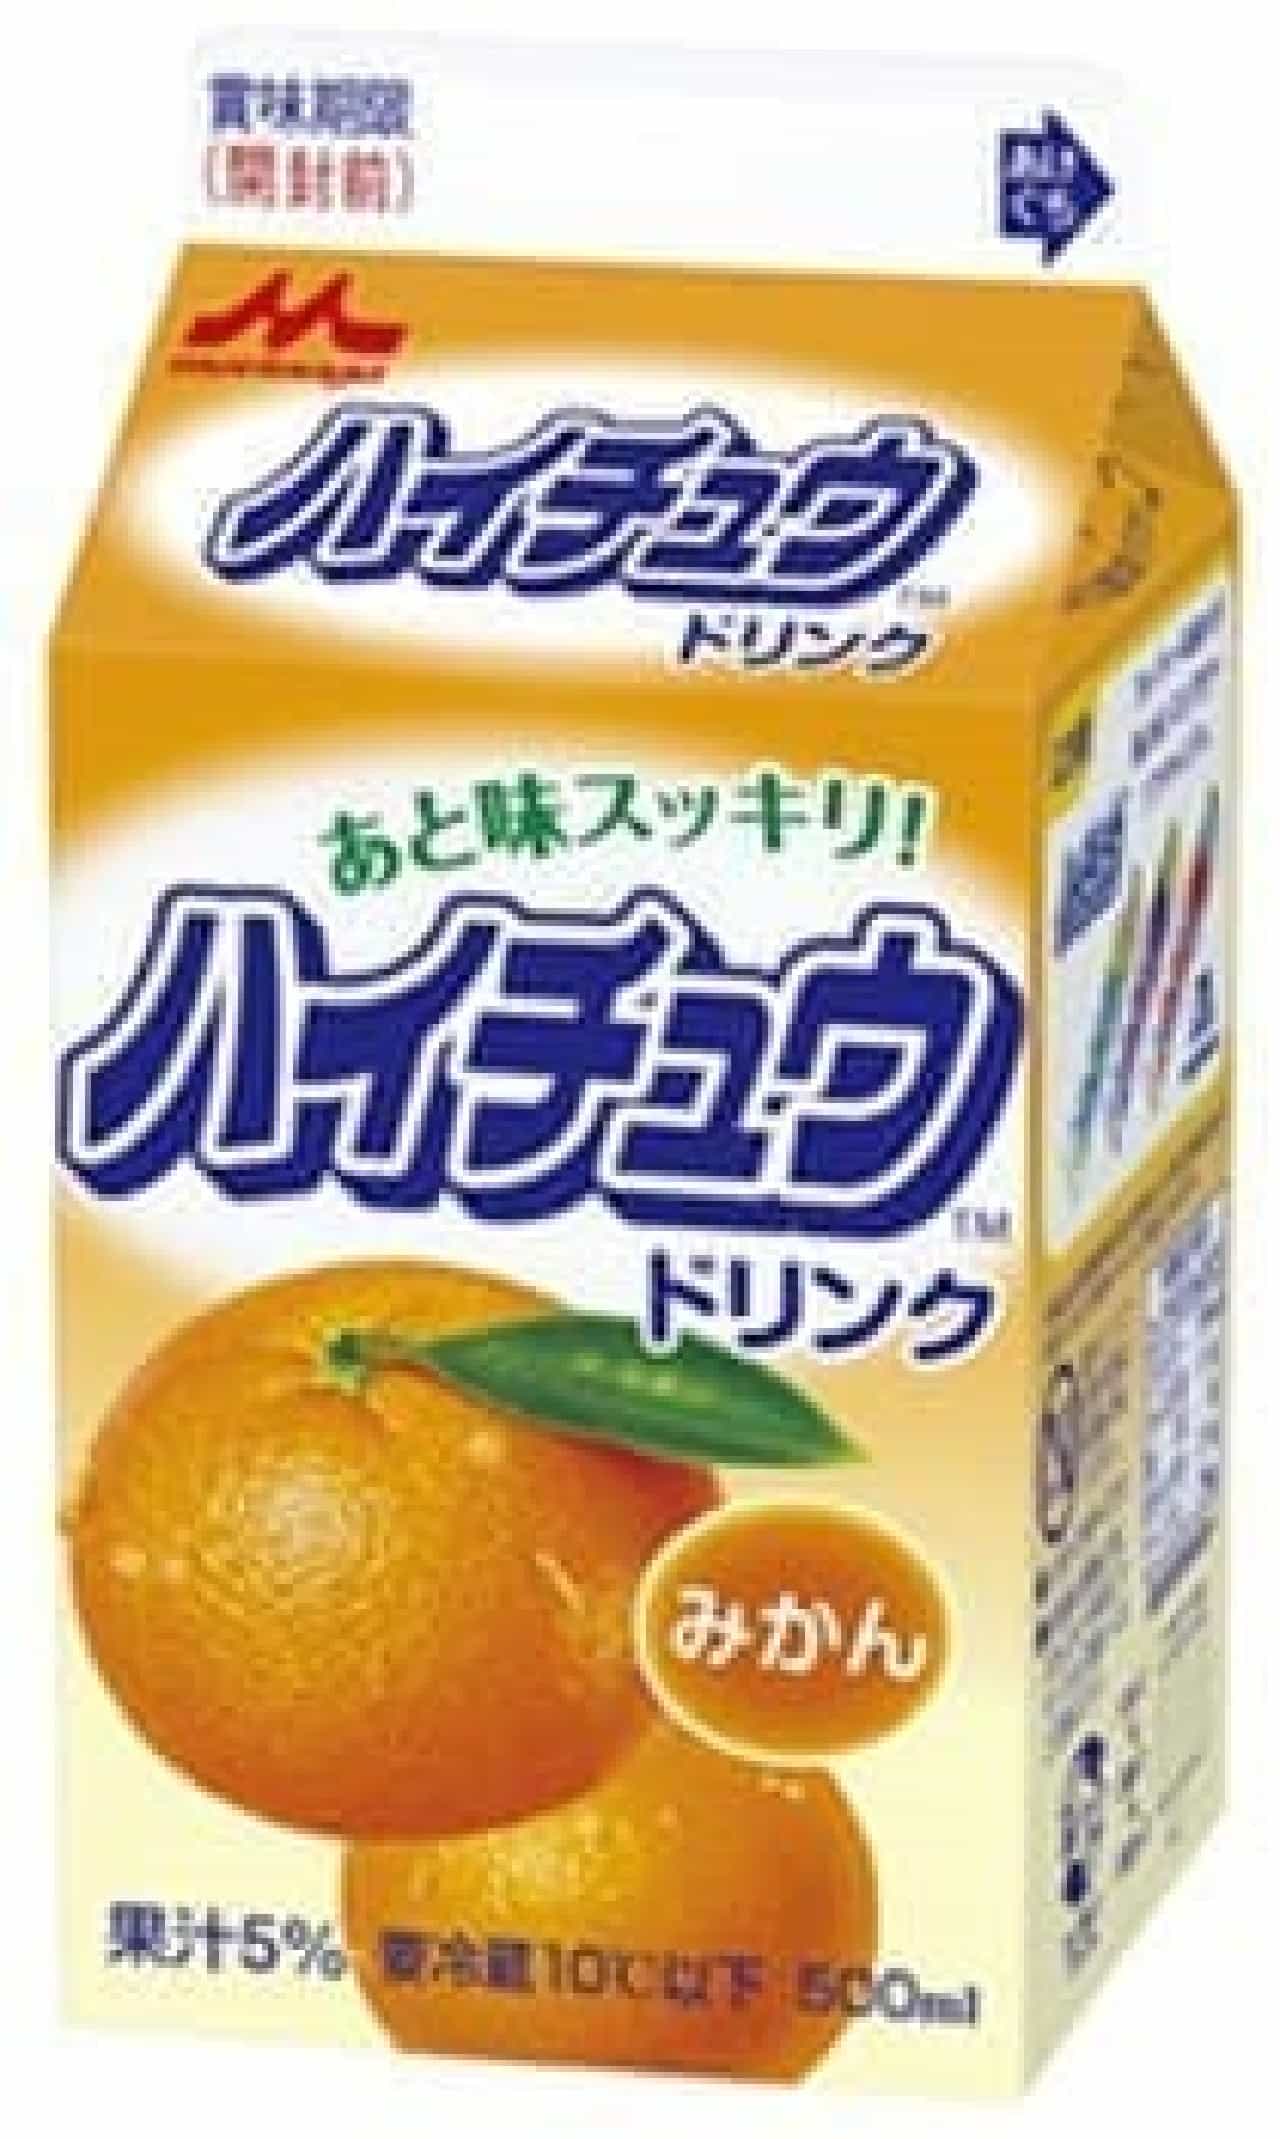 With Satsuma mandarin juice!